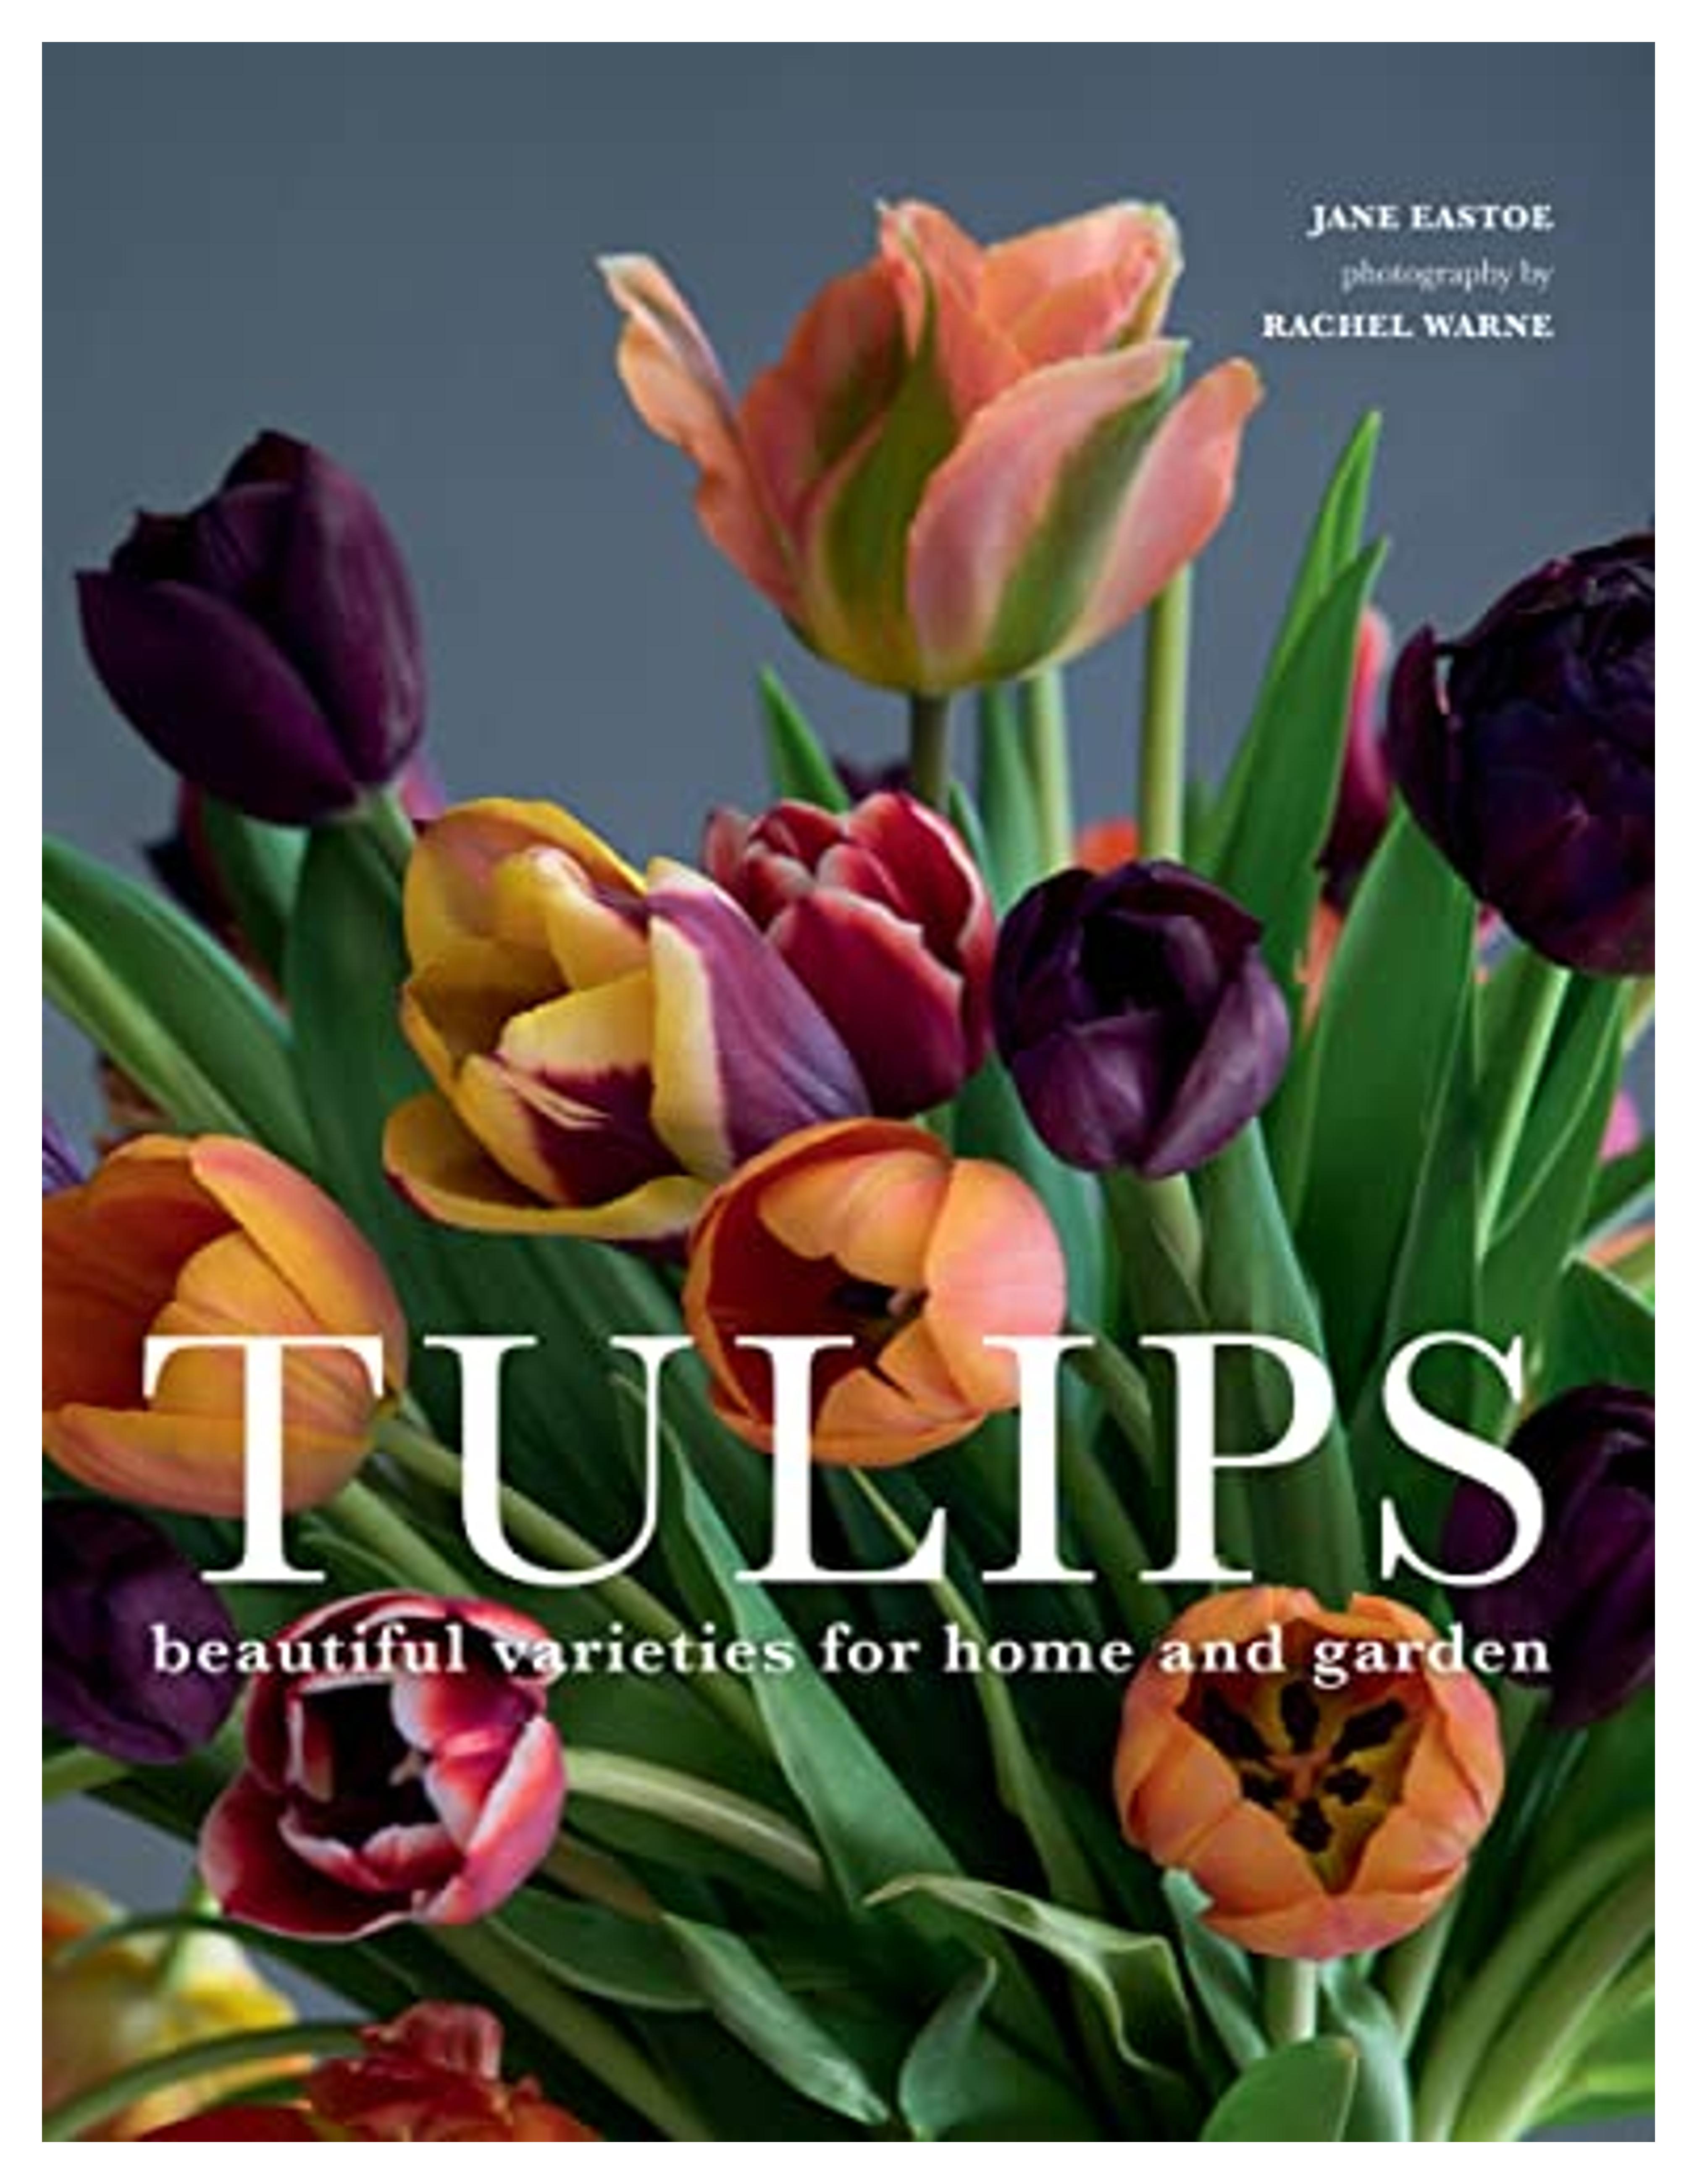 Tulips: Beautiful Varieties for Home and Garden: Eastoe, Jane, Warne, Rachel: 9781423651291: Amazon.com: Books